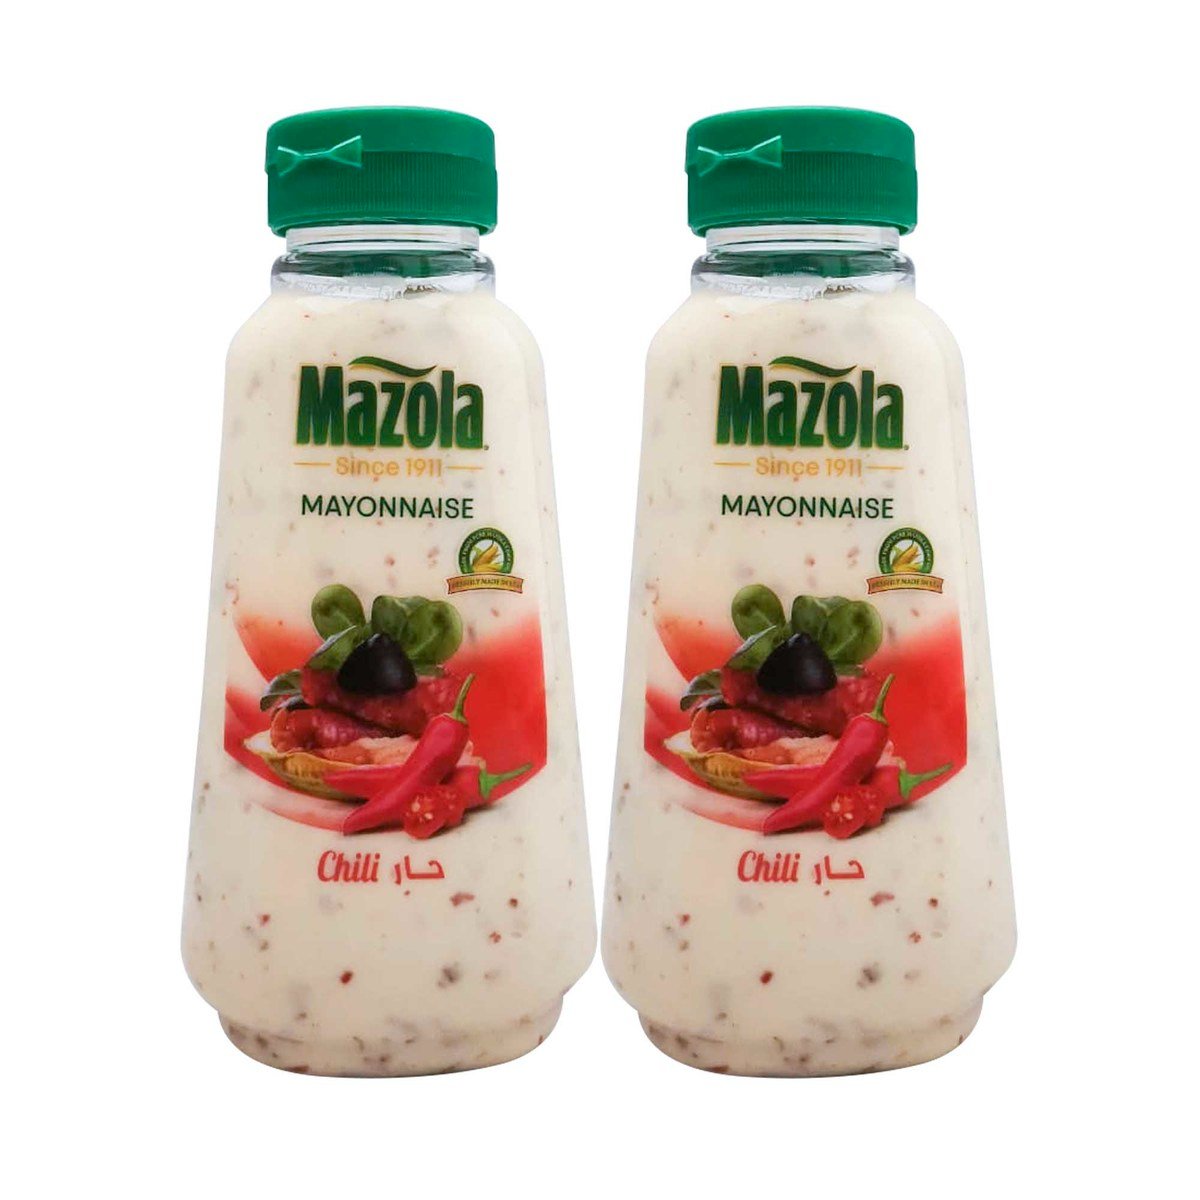 Mazola Mayonnaise Chili 2 x 340g